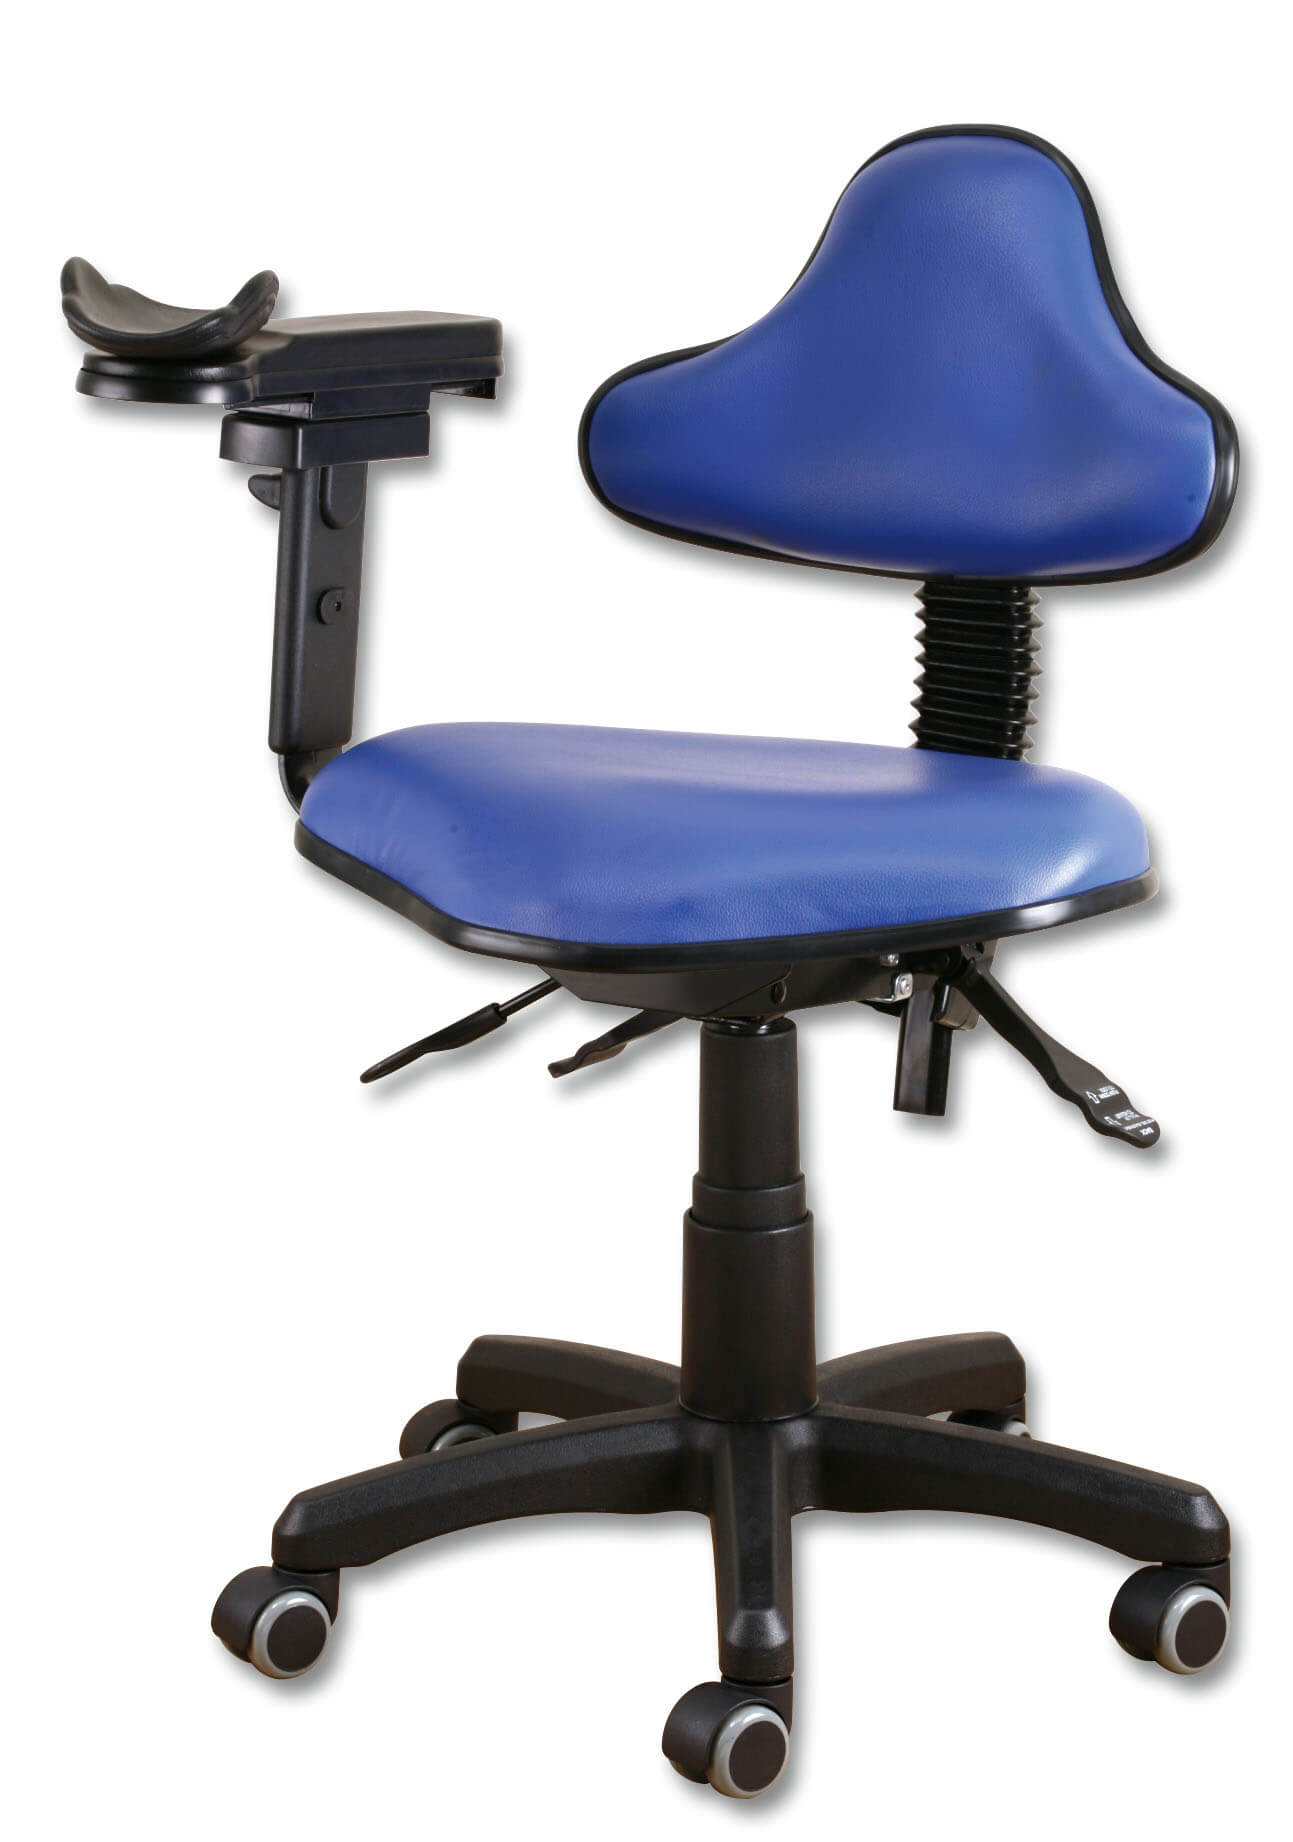 人體工學醫師椅 Image